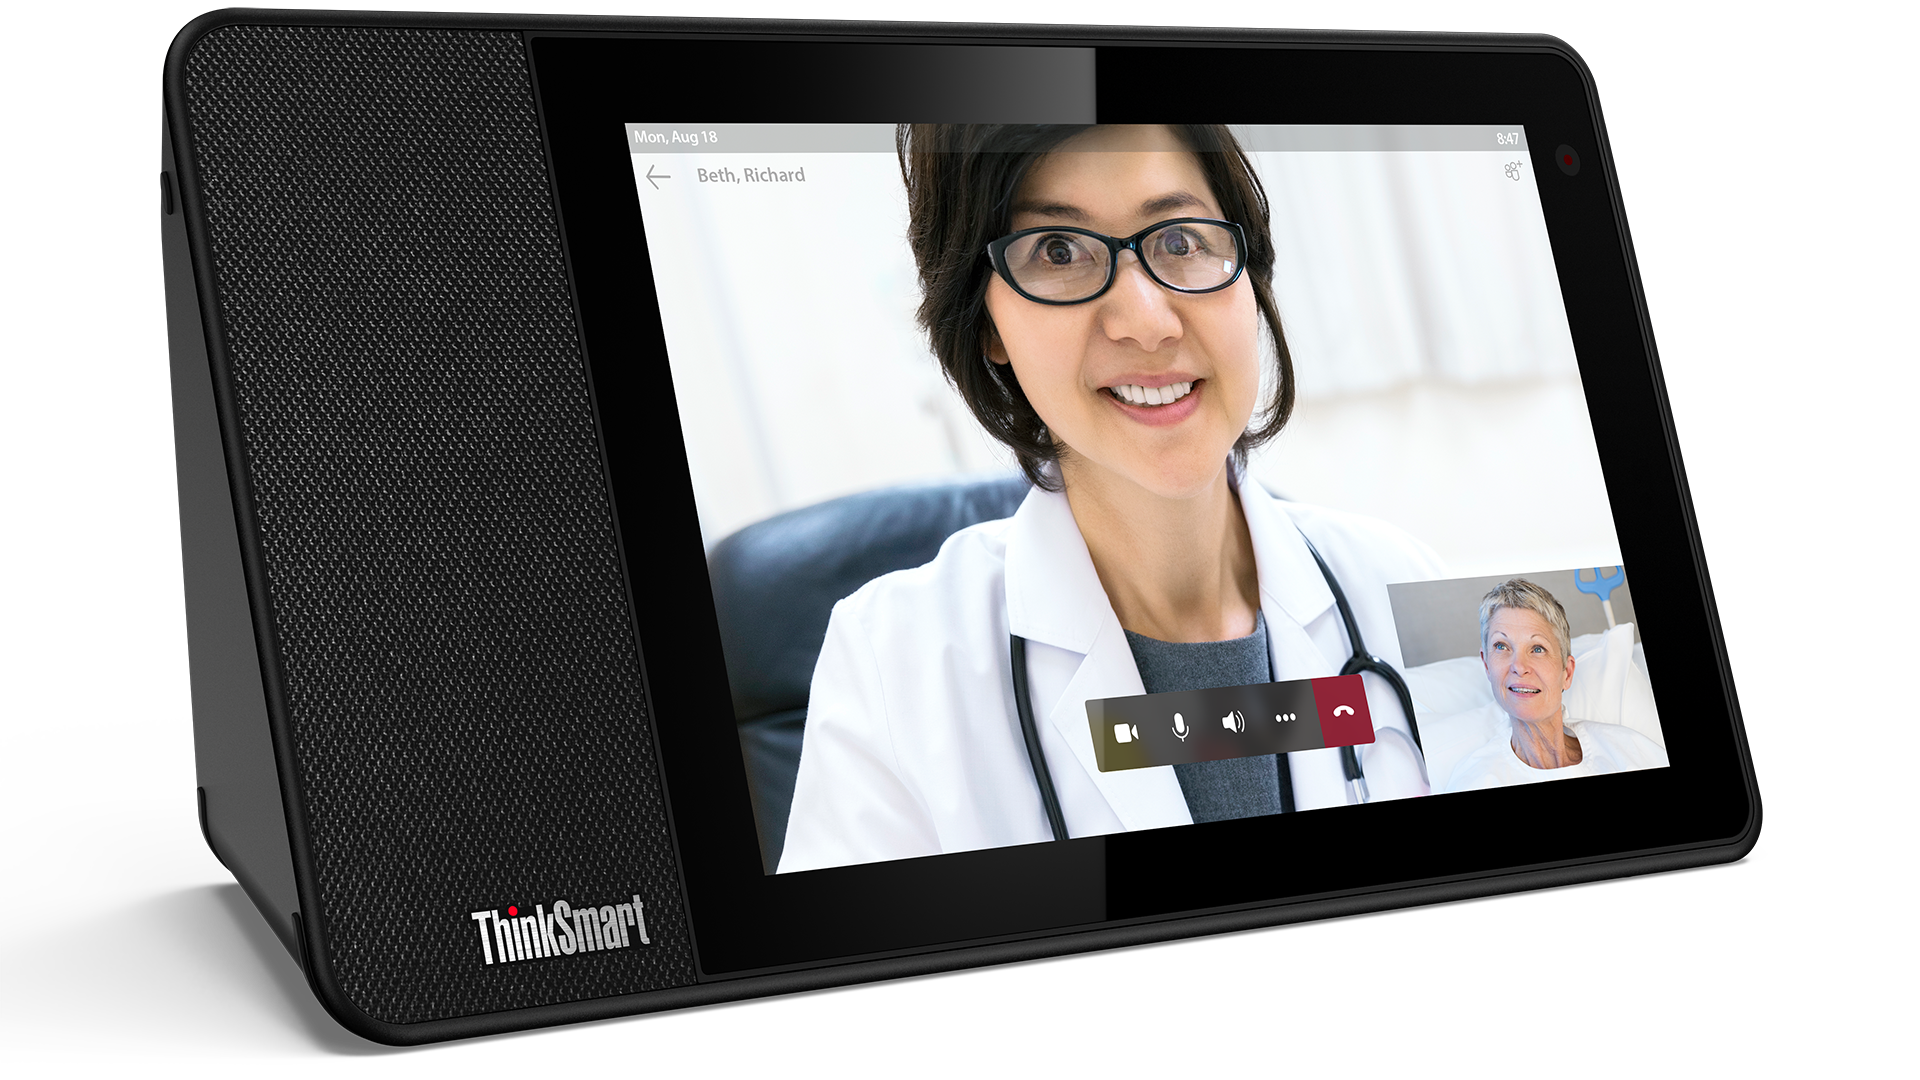 Un patient en communication directe avec son médecin via un logiciel visioconférence à l’aide d’un appareil ThinkSmart